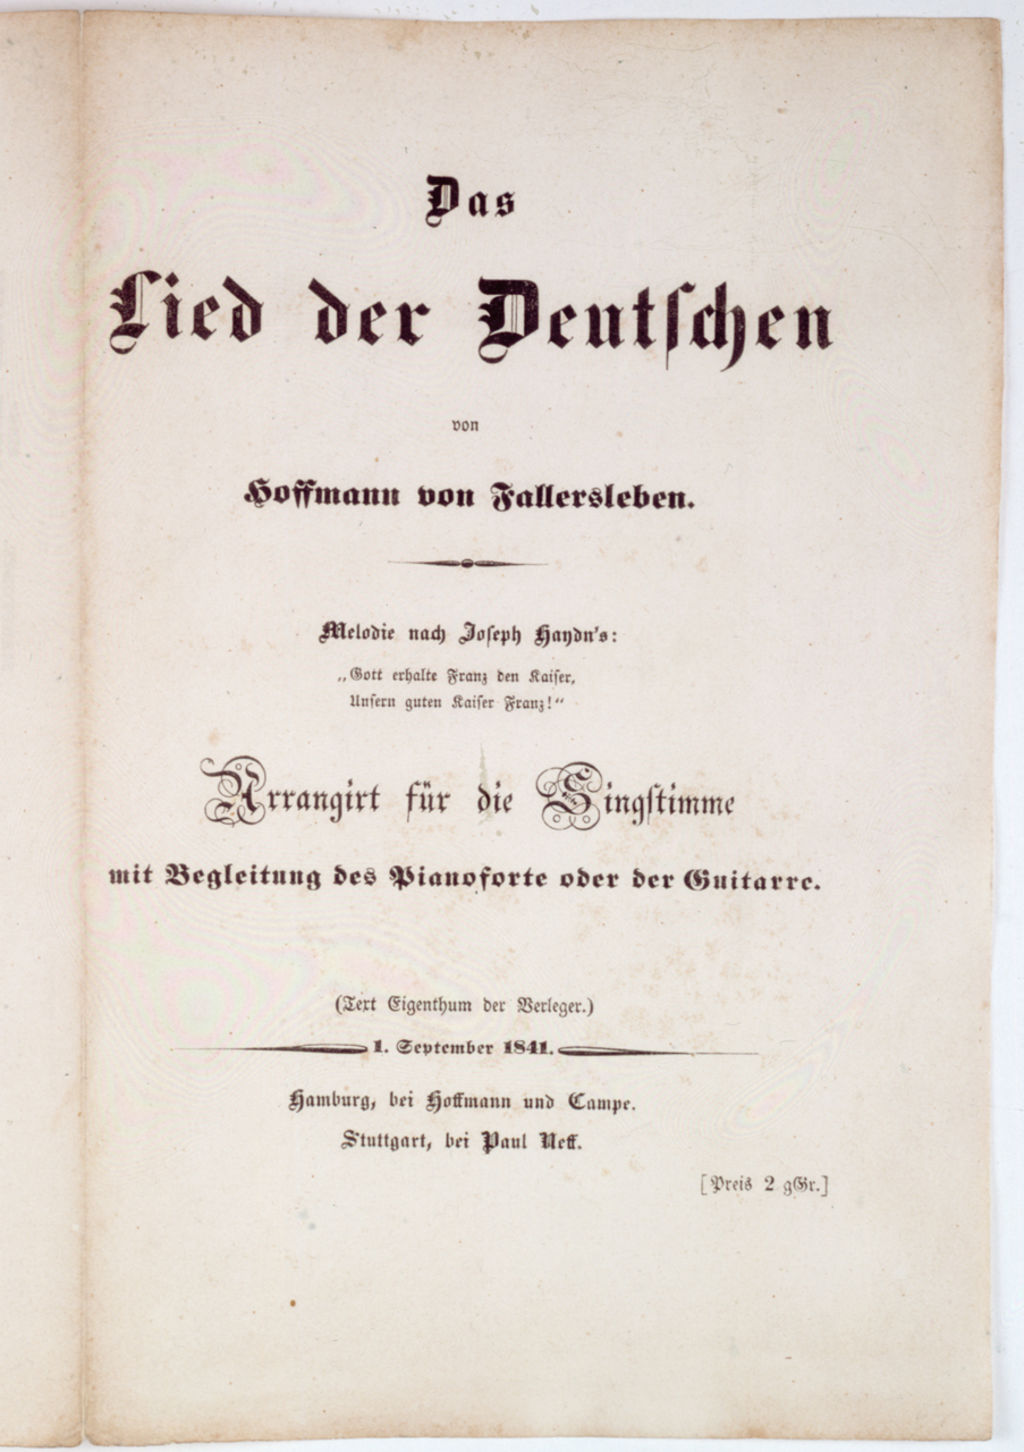 "Das Lied der Deutschen": Titelseite, 1841